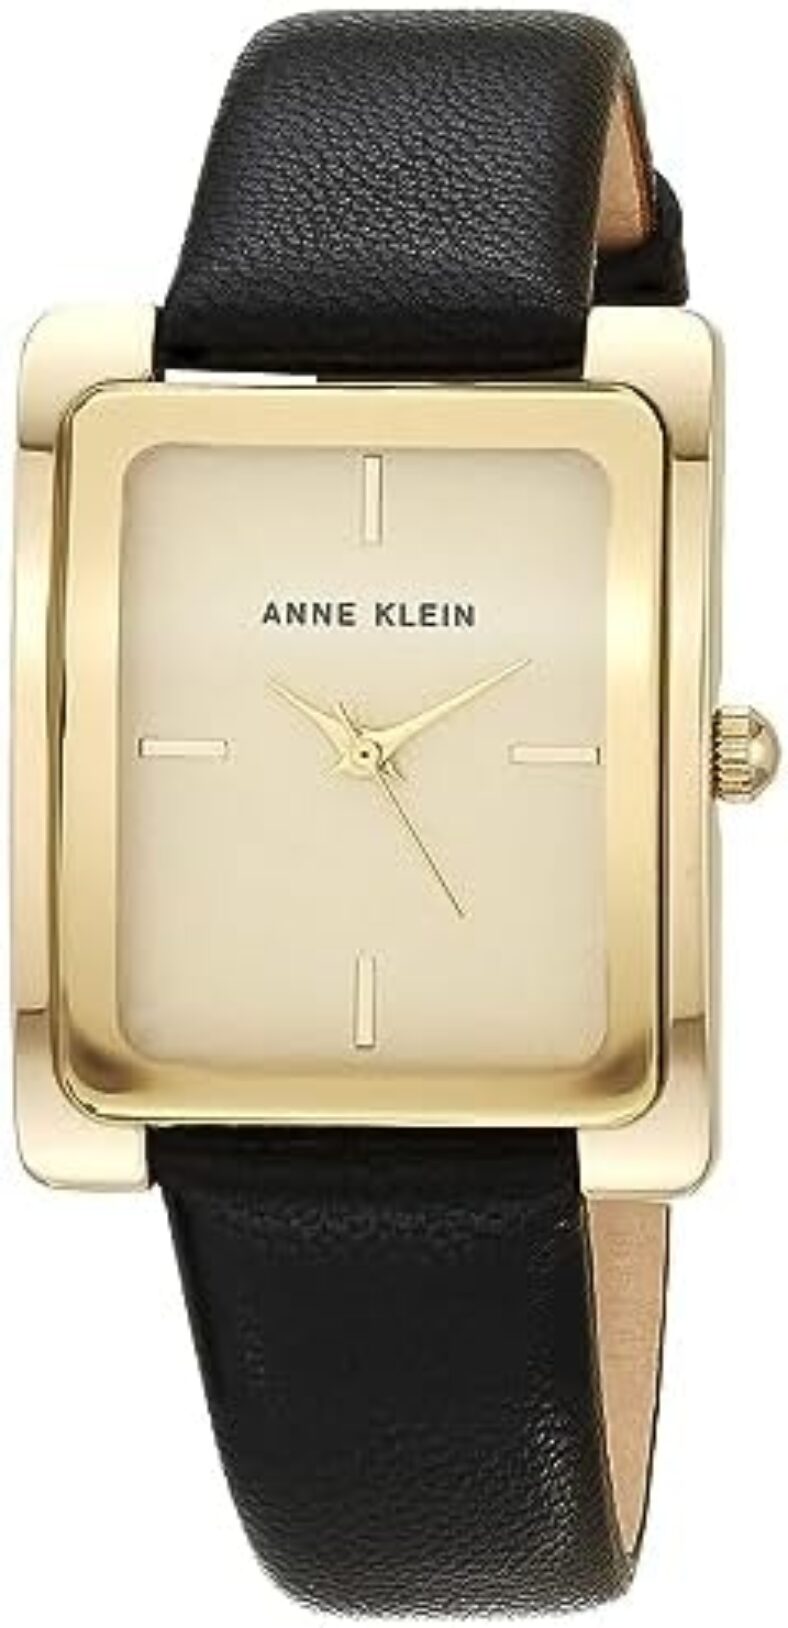 Anne Klein Women’s Leather Strap Watch